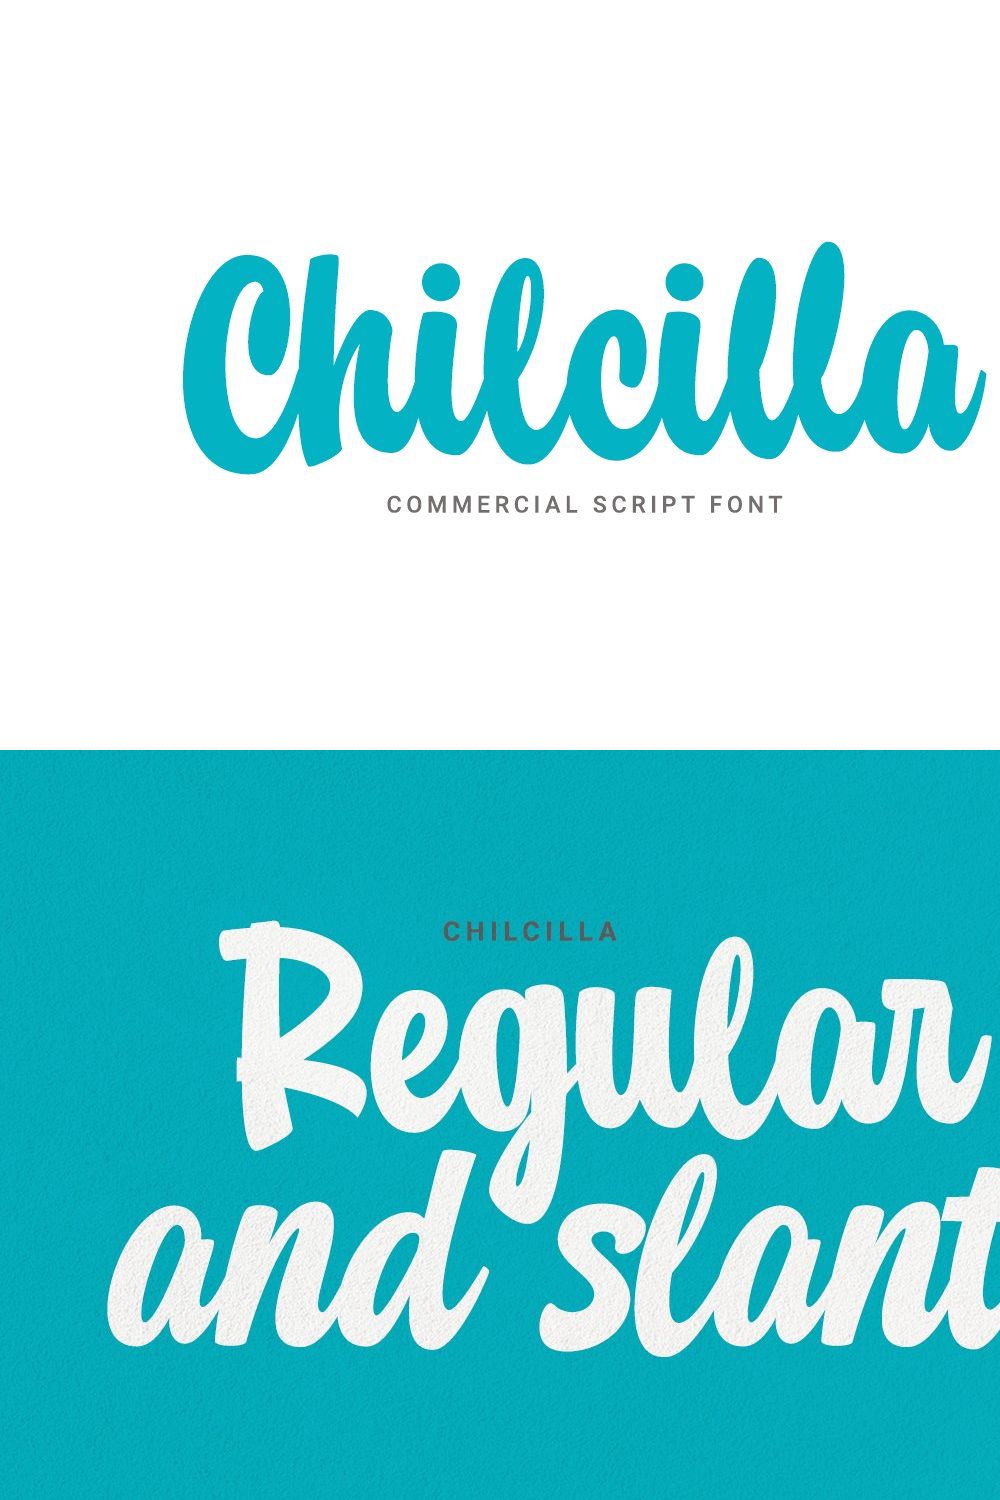 Chilcilla Commercial Script Font pinterest preview image.